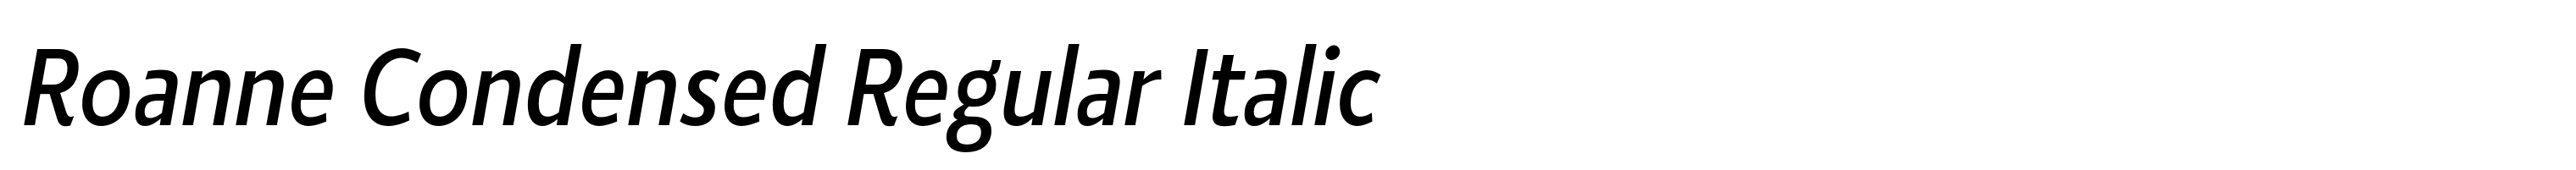 Roanne Condensed Regular Italic